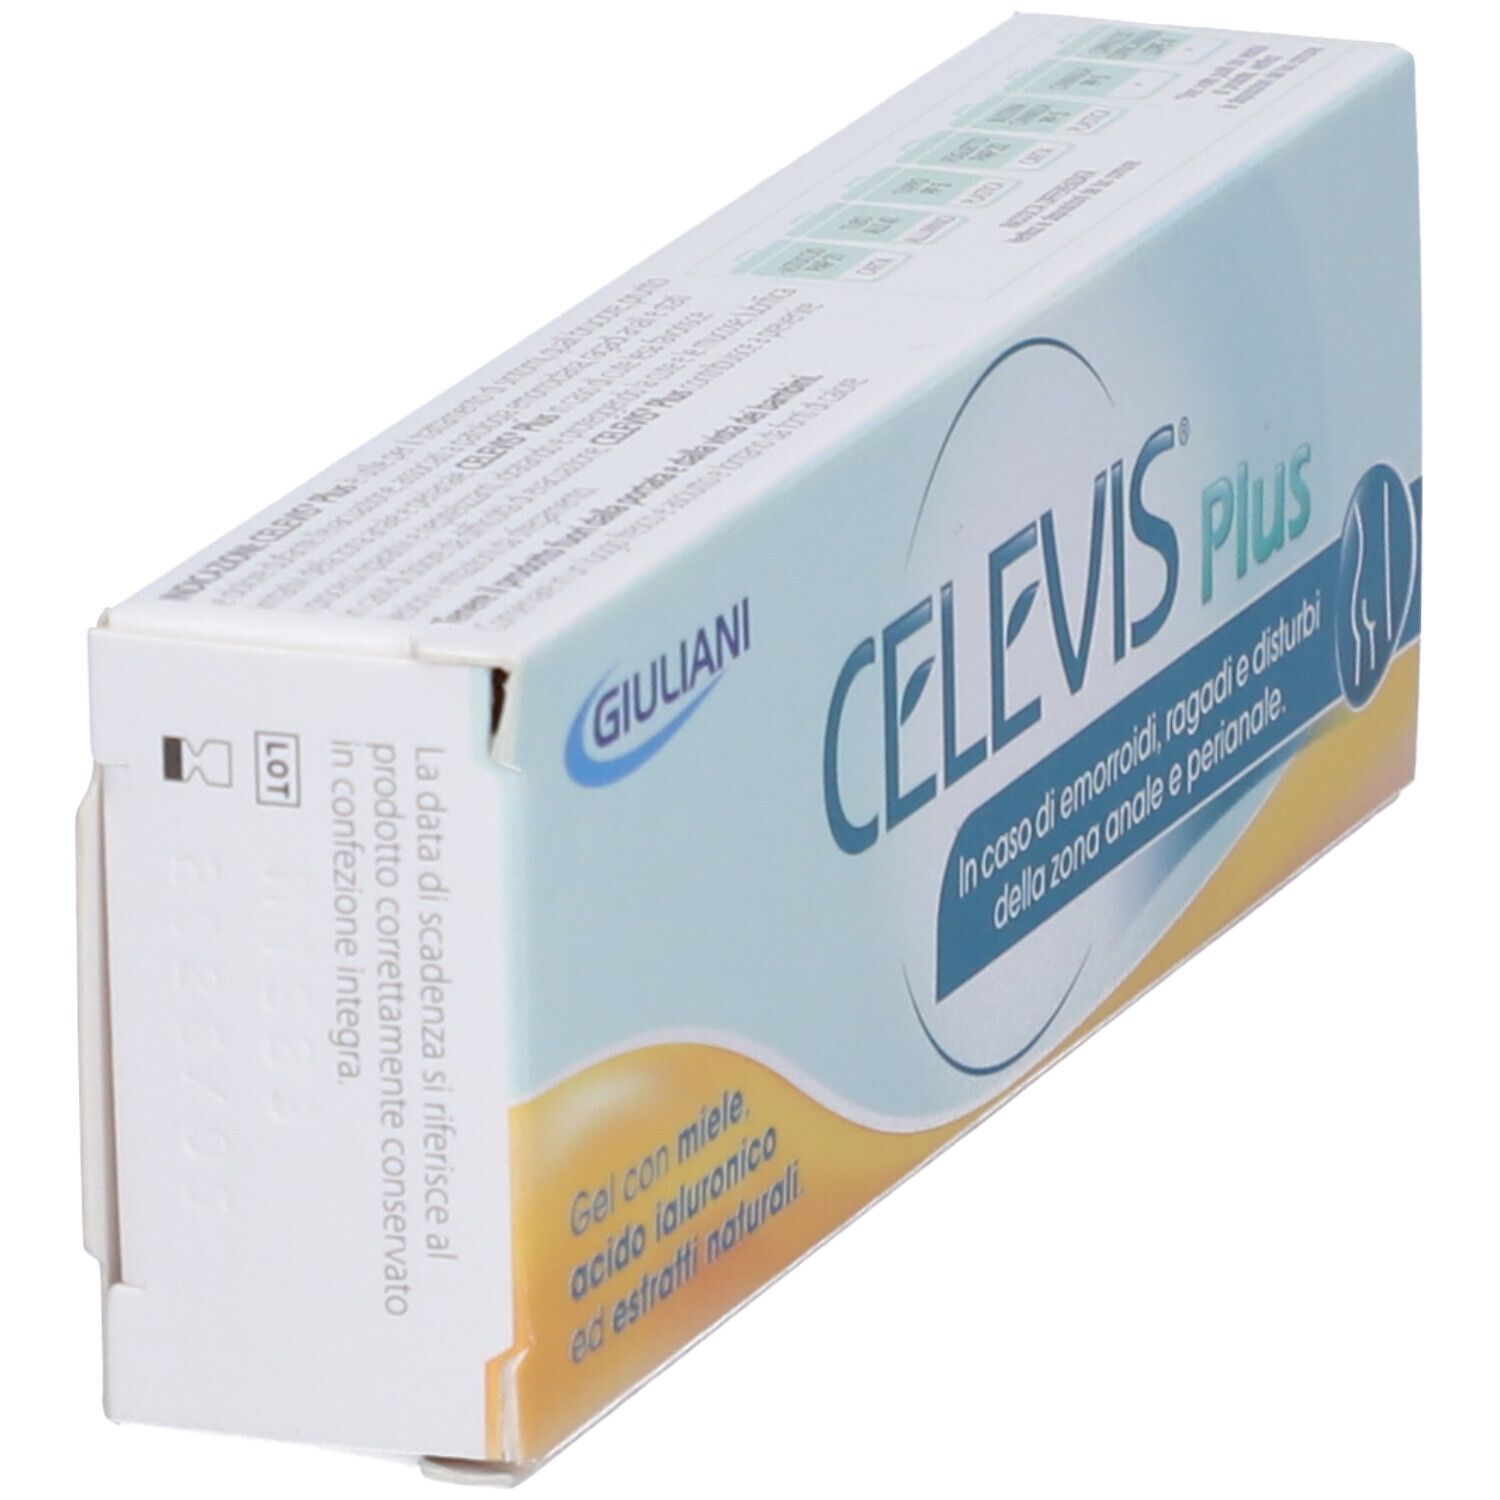 Celevis Plus